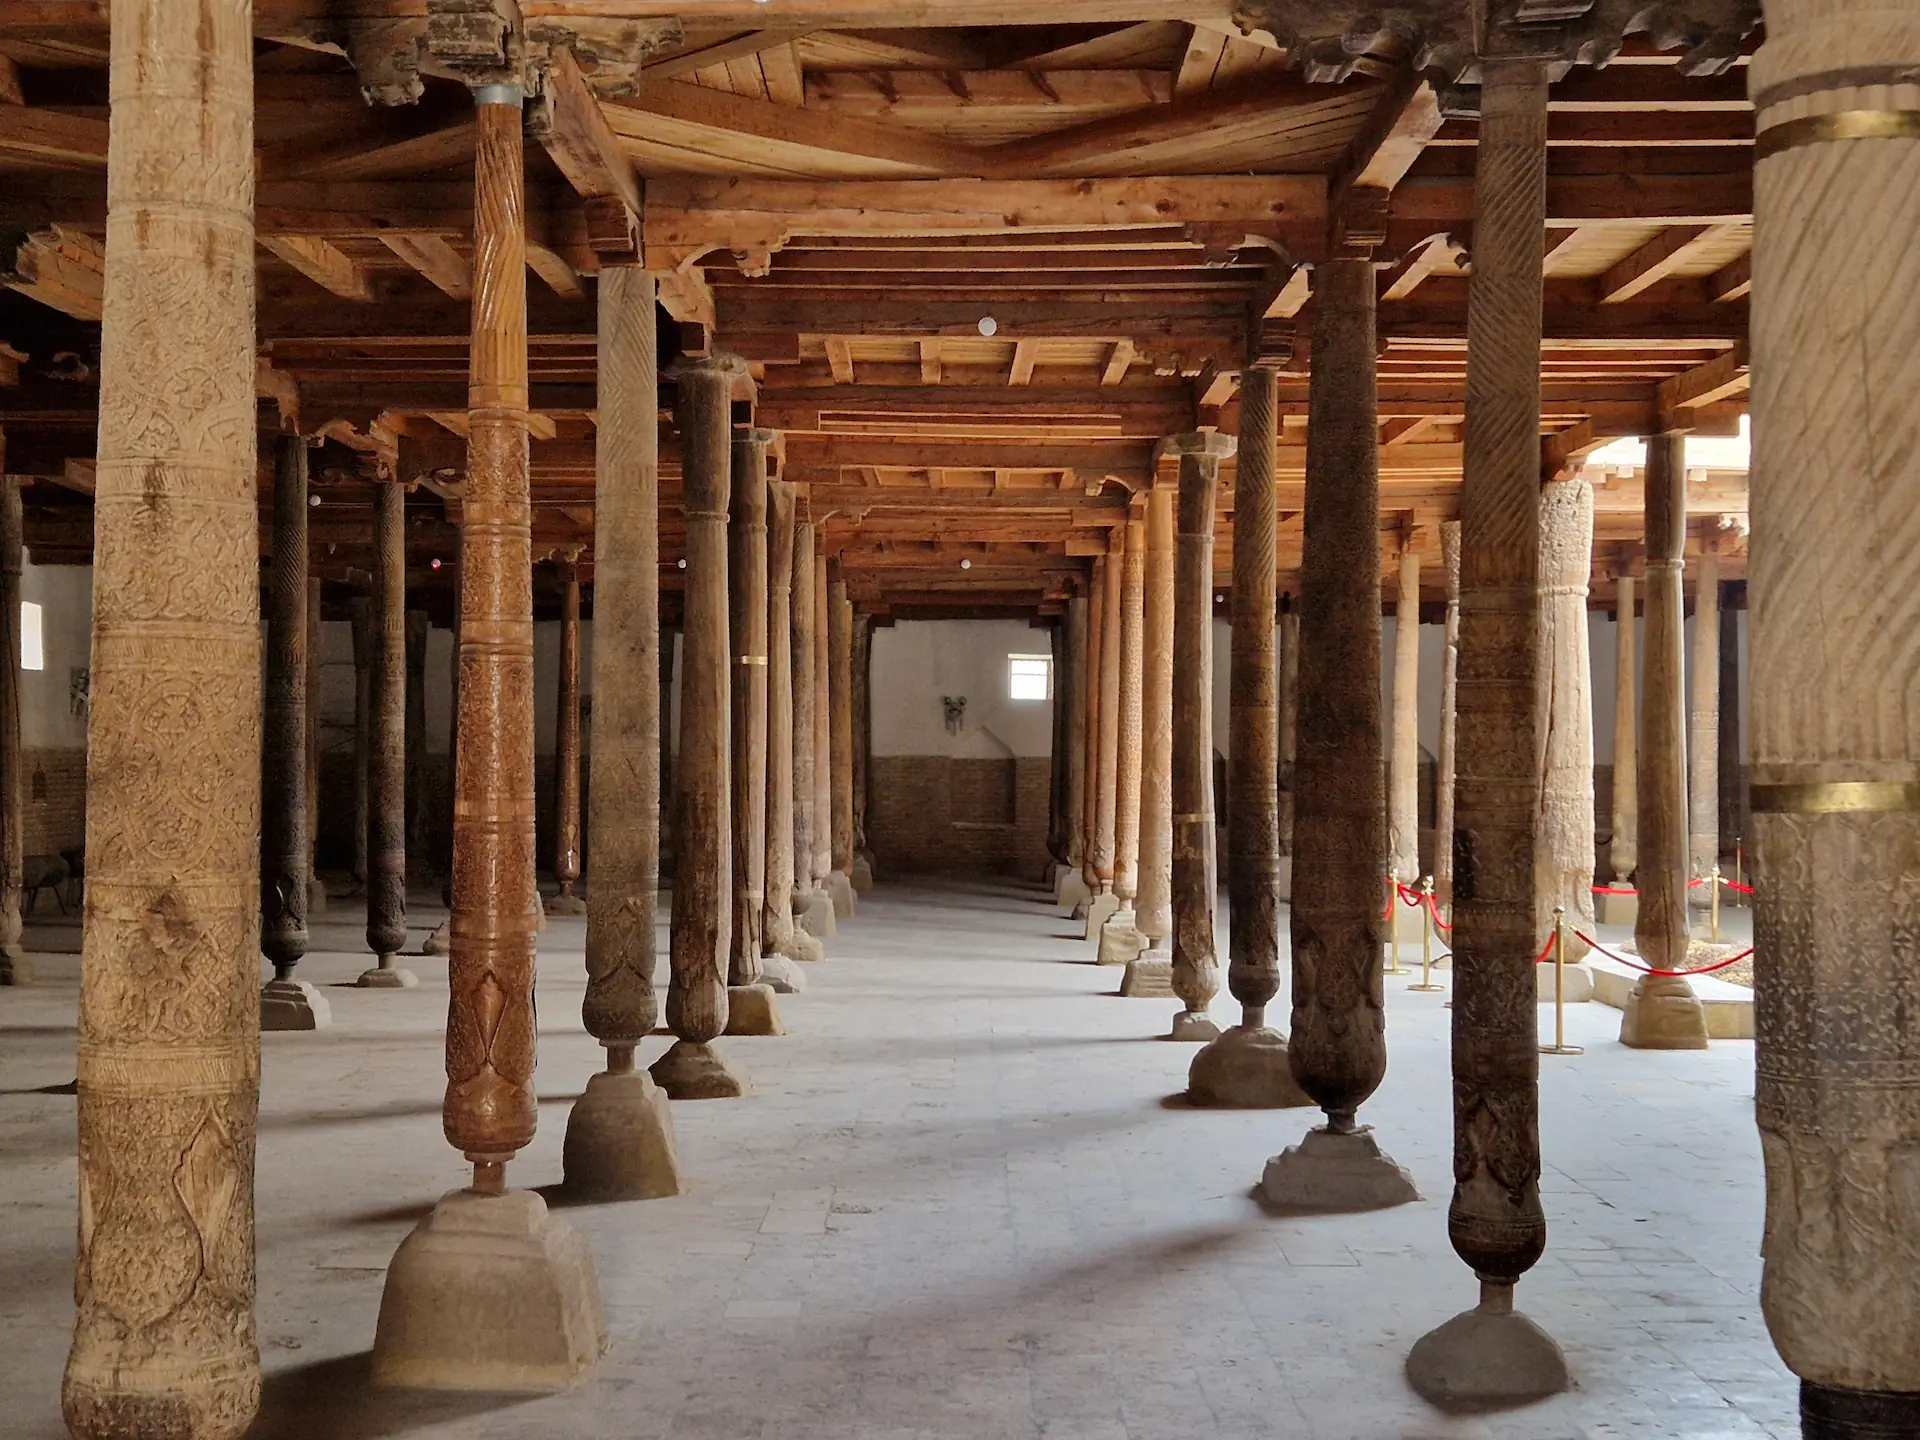 Intérieur d'une mosquée tout en bois. De nombreux piliers en bois soutiennent le bâtiment.